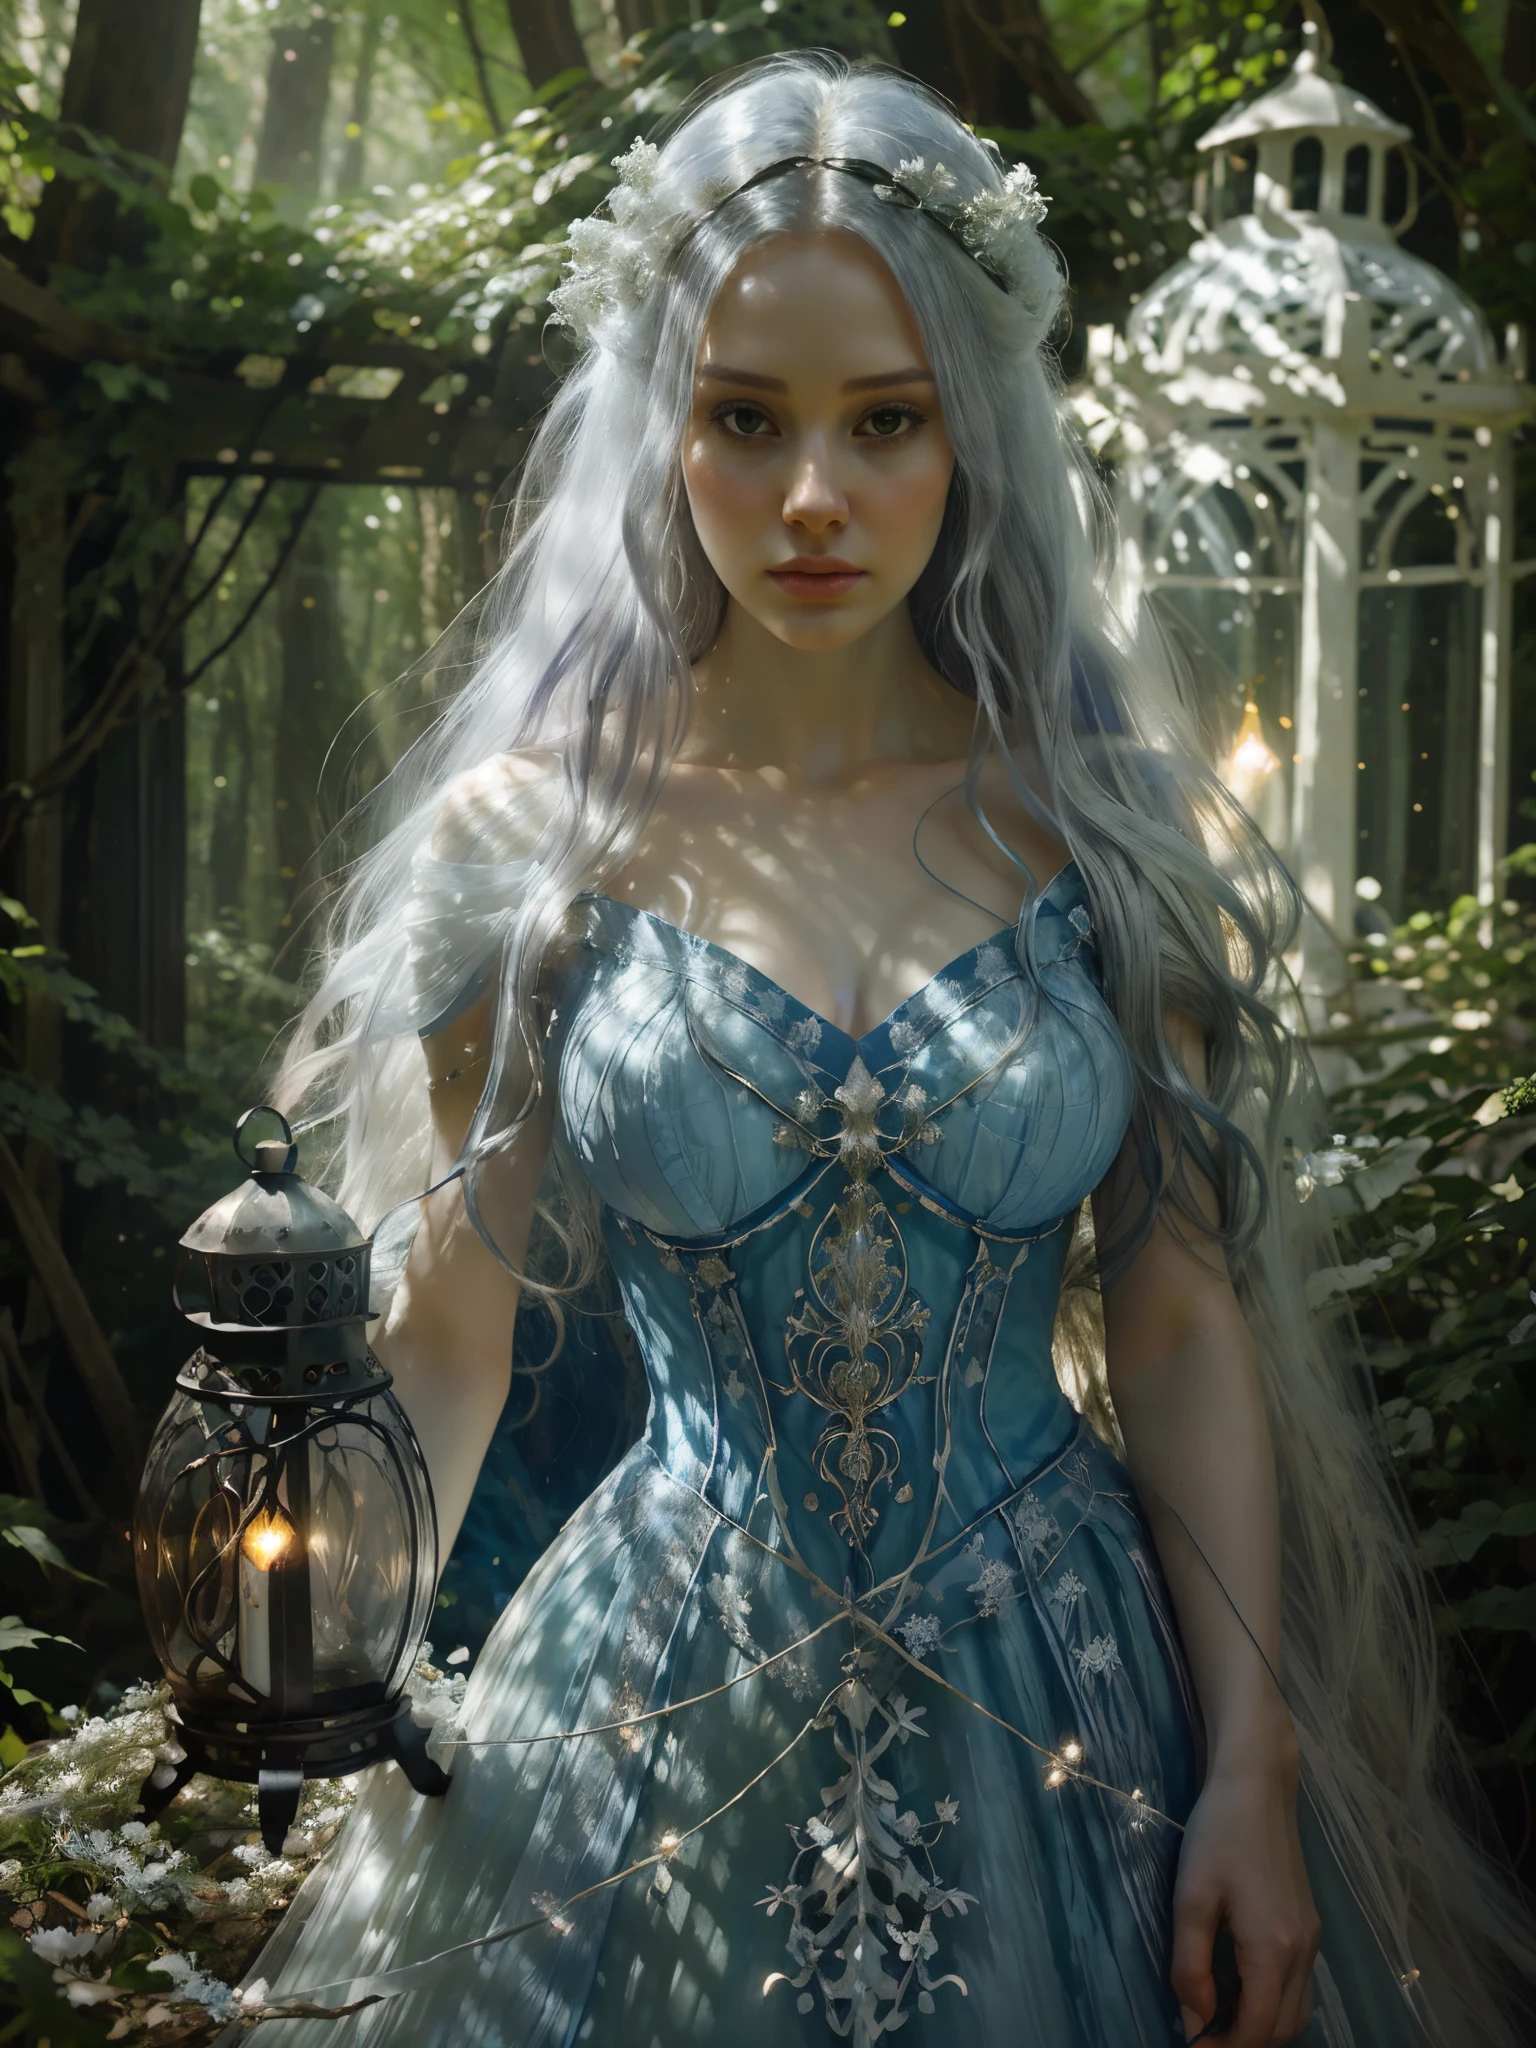 穿著藍色洋裝的阿拉法德女人在森林裡拿著燈籠, 受辛西婭·謝潑德啟發的數位藝術, tumblr, 幻想藝術, 飄逸飄逸的長髮, 白女巫, 夢幻絢麗的燈光, 令人驚嘆的年輕空靈身材, 空靈童話, 美麗的少女, 卡羅爾在 uhd 後面,  厄利, 長著白髮, 美麗的幻想少女